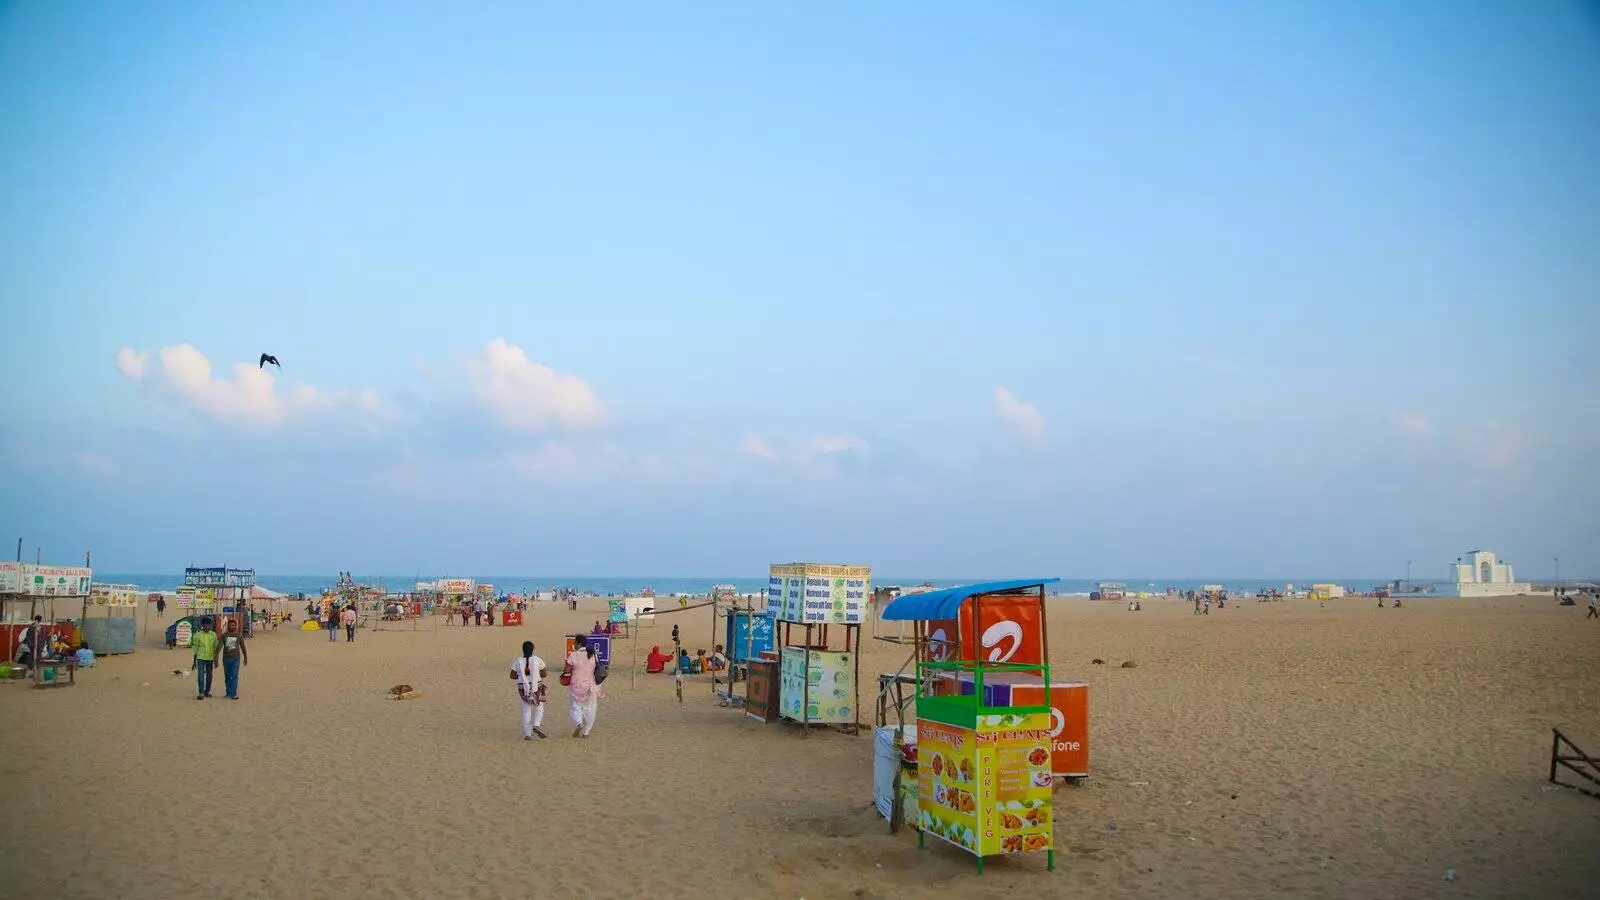 Elliots Beach Chennai India